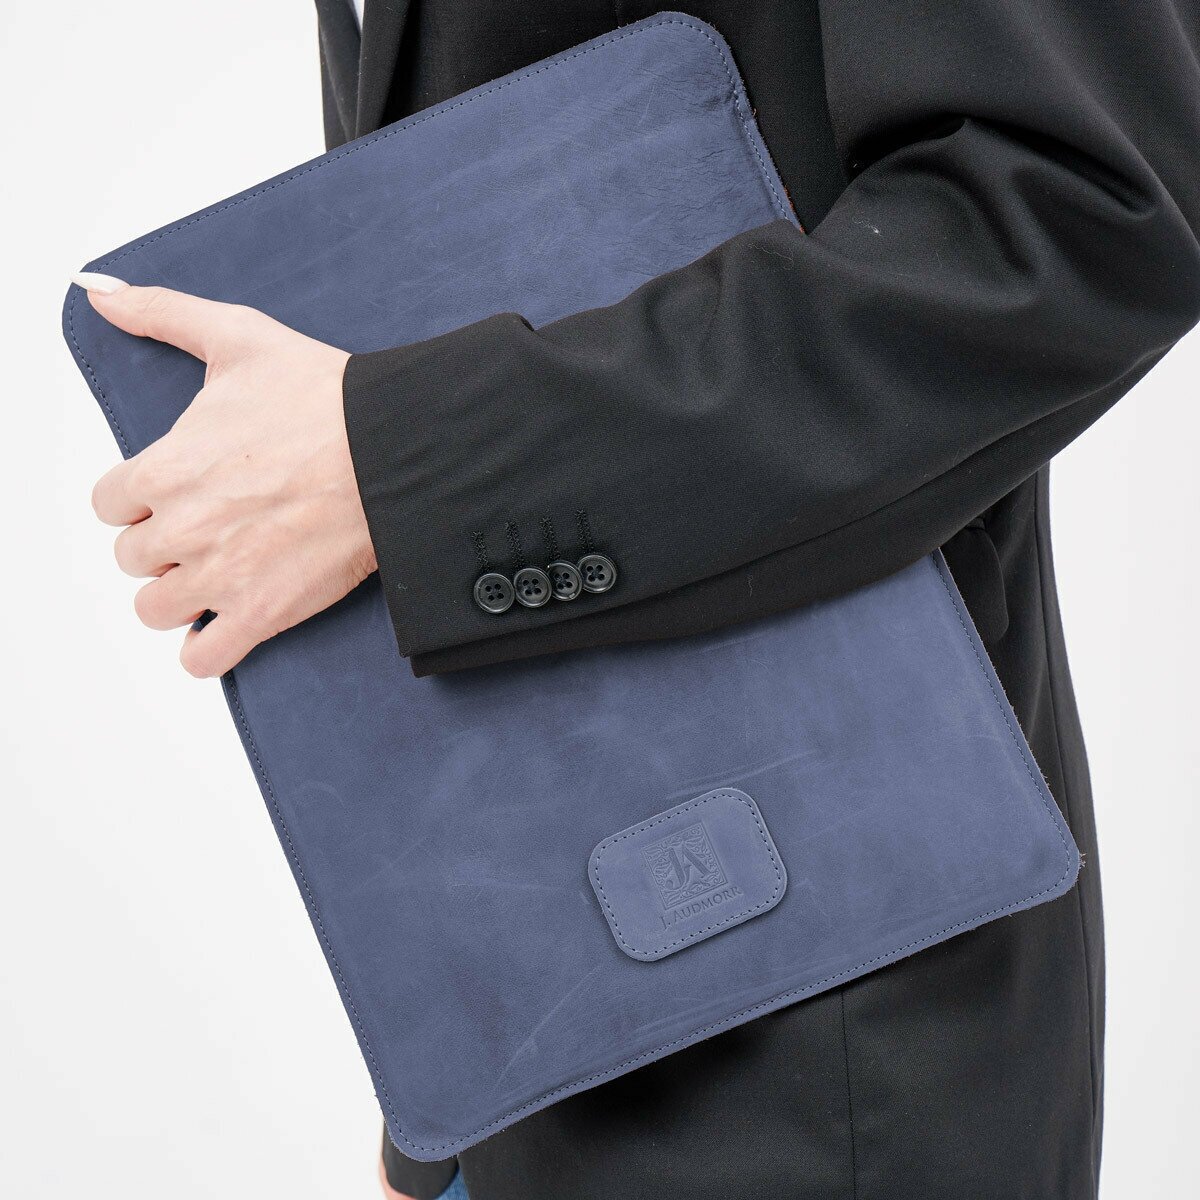 Кожаный чехол - карман J.Audmorr для Macbook 13 Air/Pro / ноутбука 13-13.3", с размерами до 315 х 212 х 16 мм, синий, NewBridge 13 Saphire